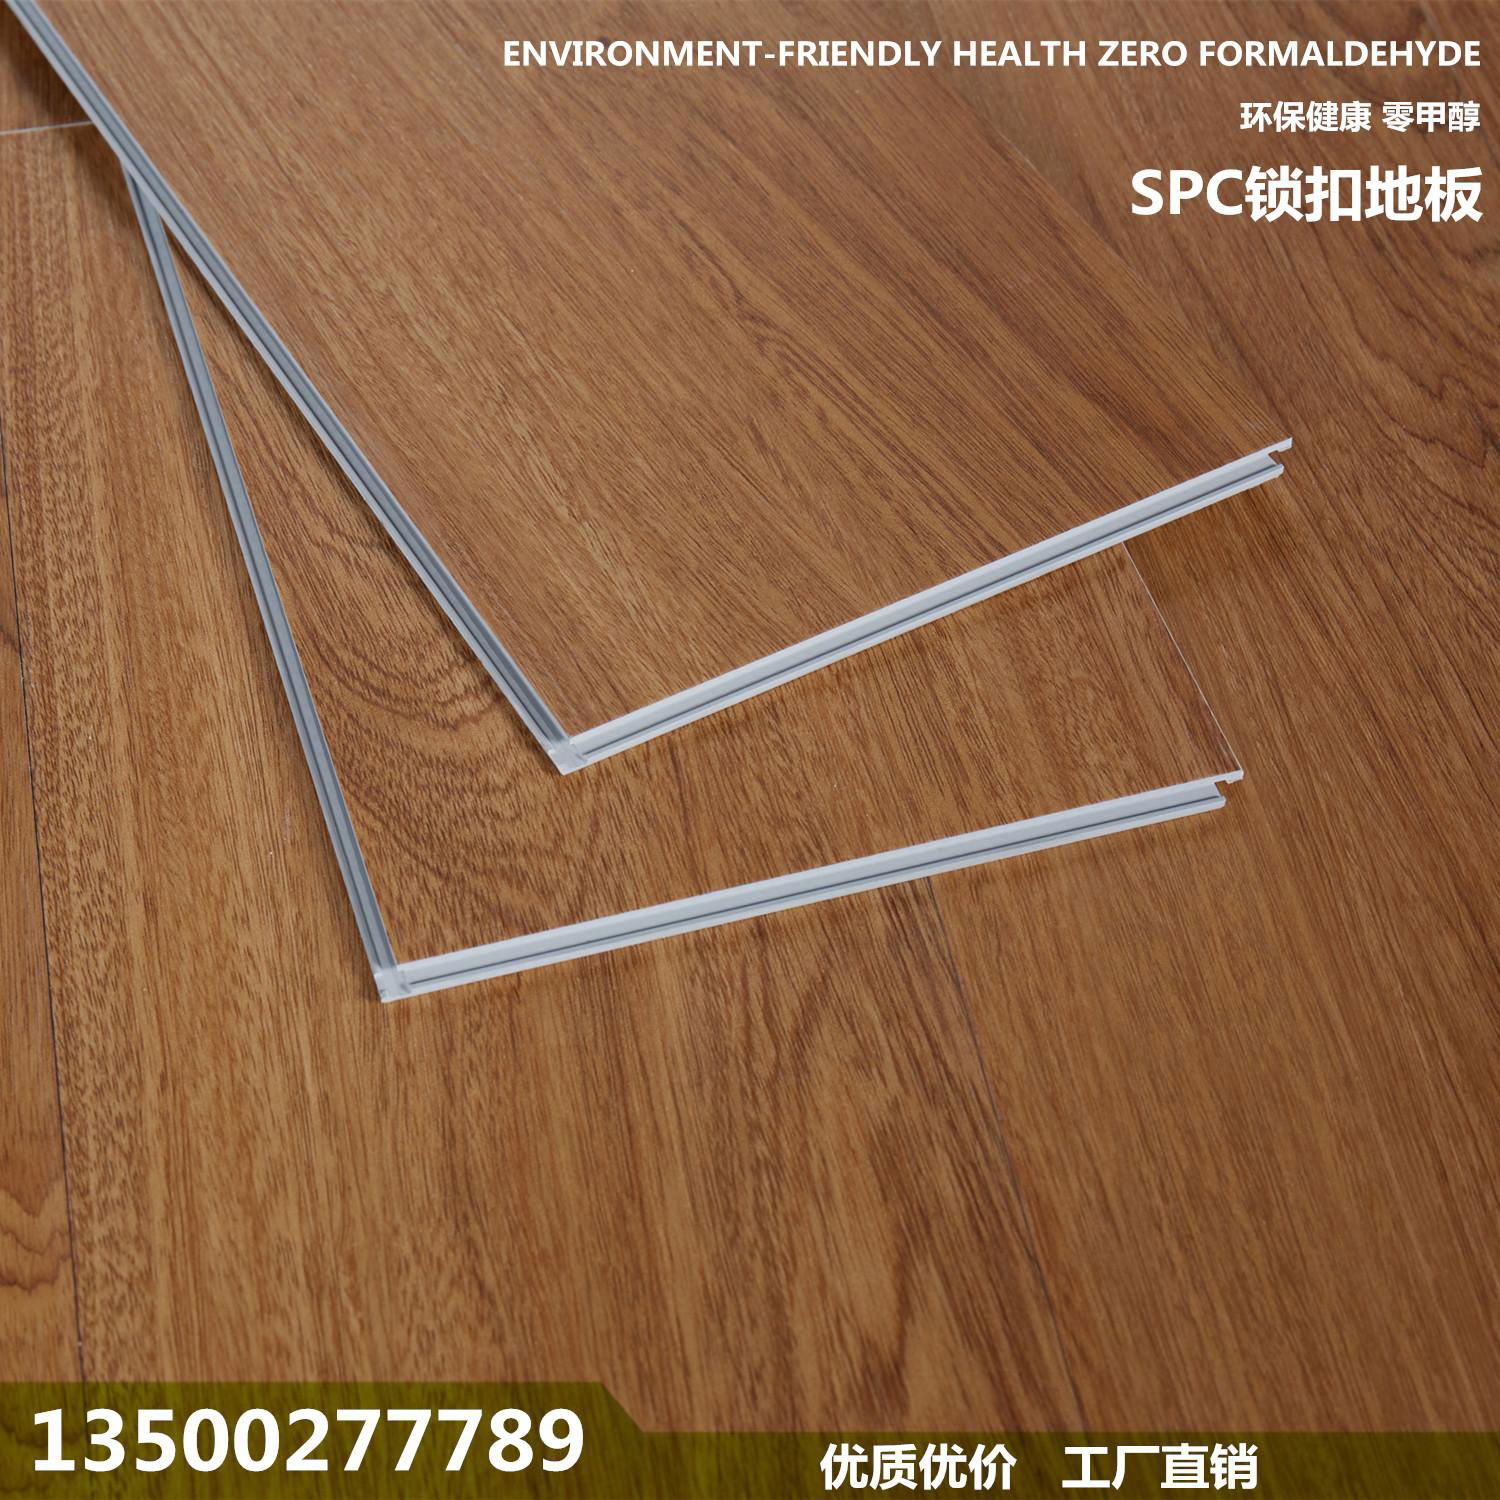 SPC Floor Stone Plastic Floor PVC floor 3